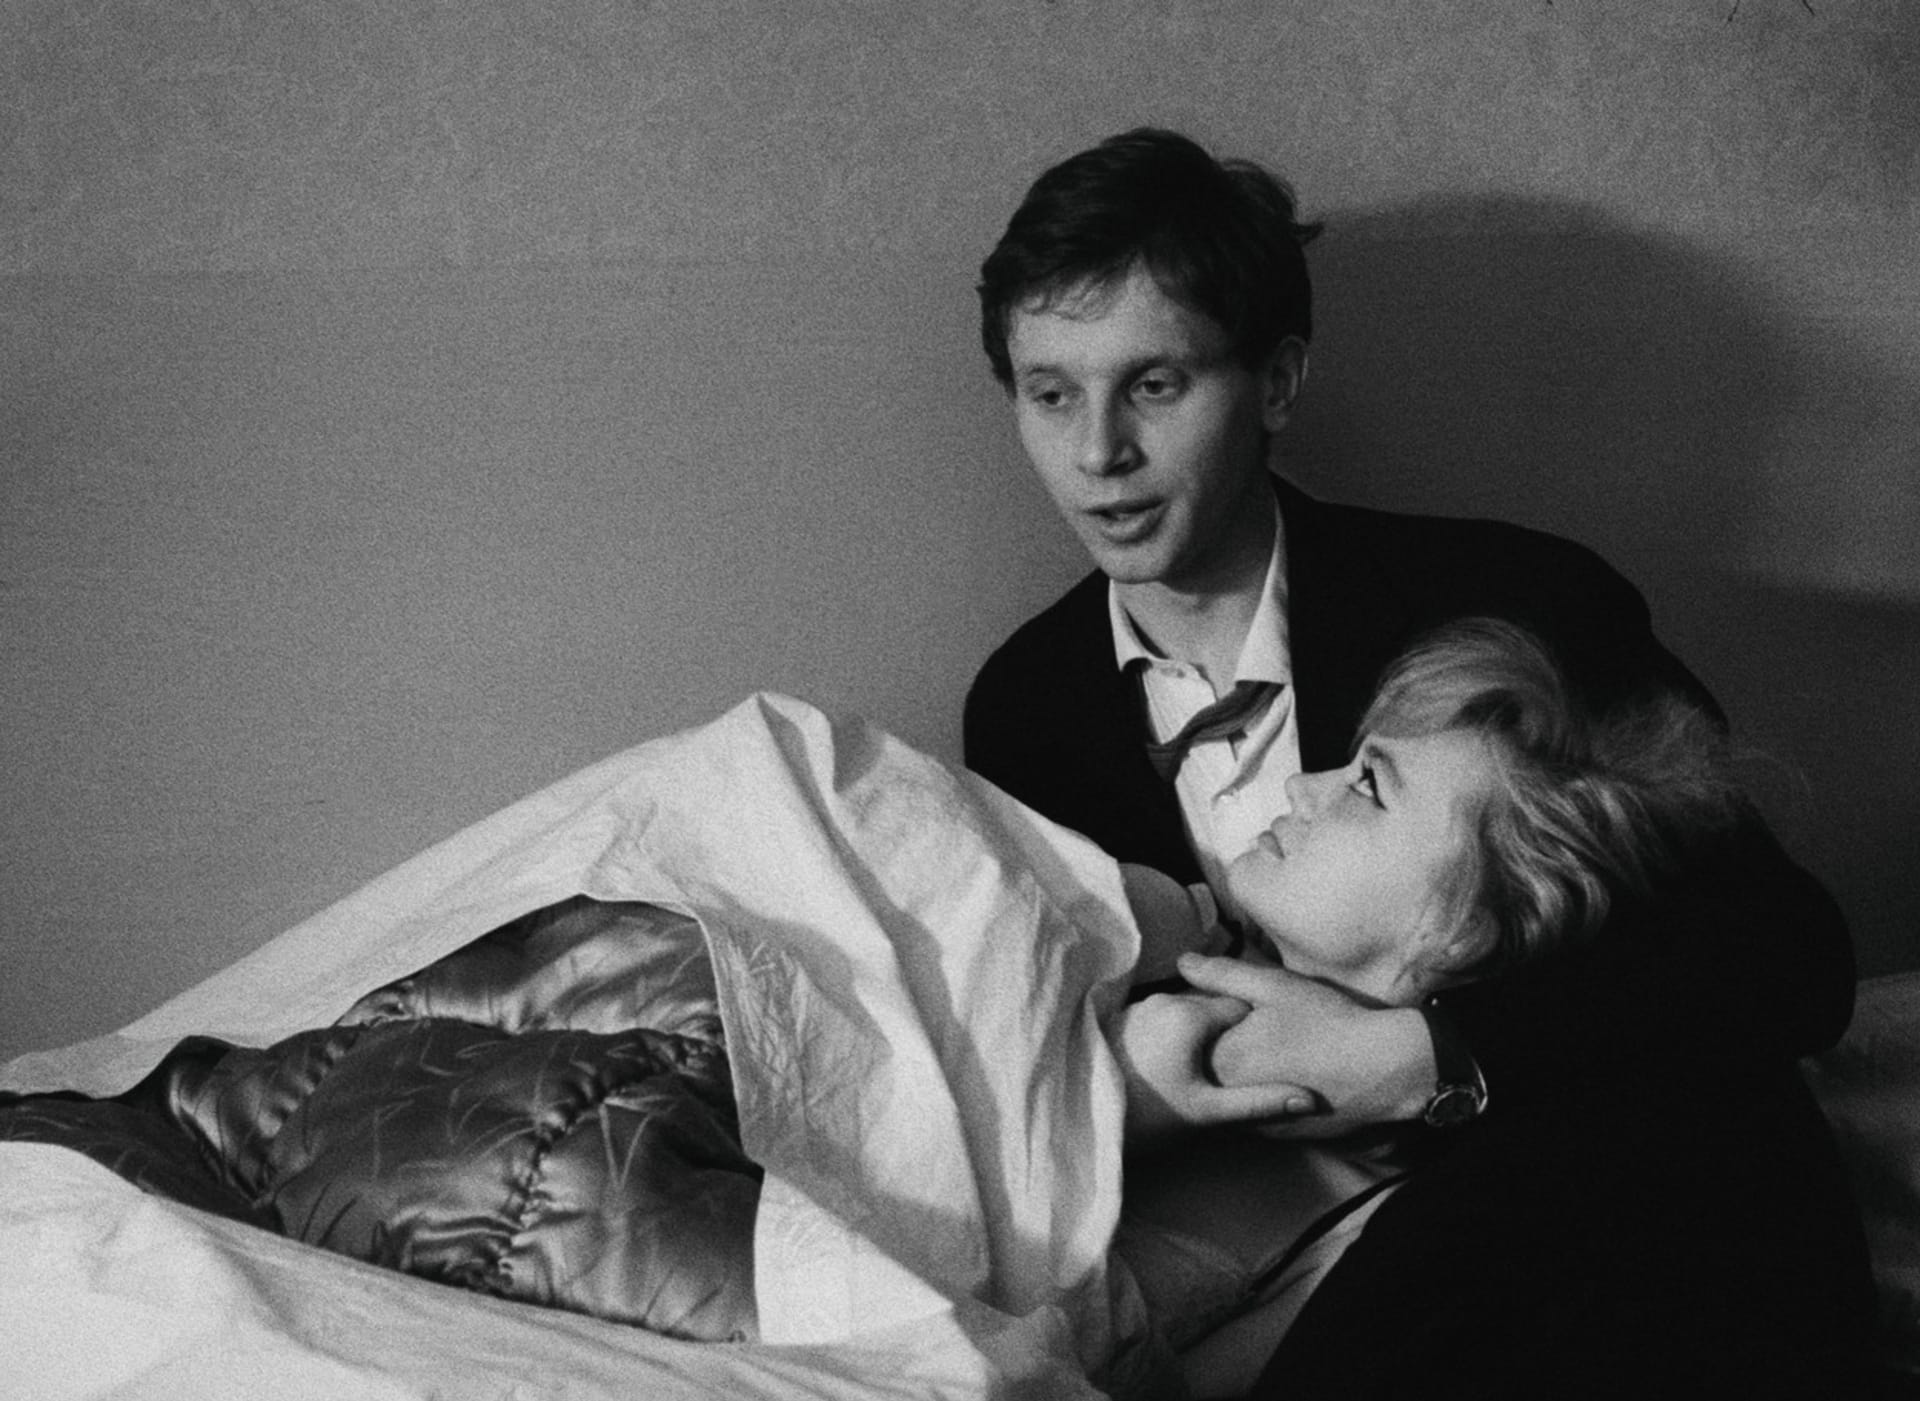 Formanův film Lásky jedné plavovlásky z roku 1965, v němž Hana Brejchová ztvárnila hlavní roli, byl nominován na Oscara za nejlepší cizojazyčný film.